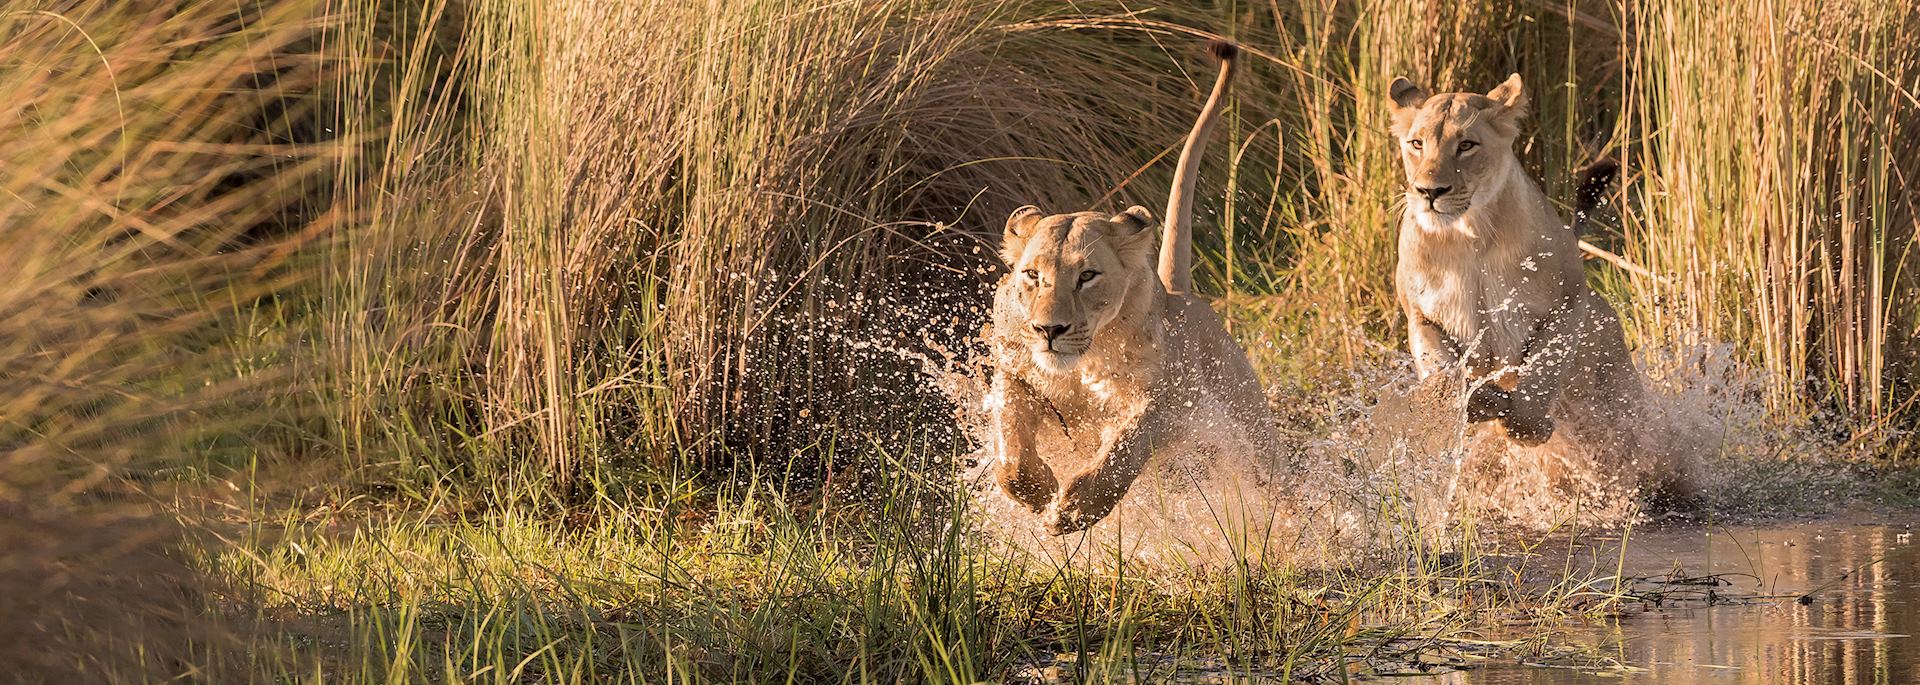 Lion in the Okavango Delta